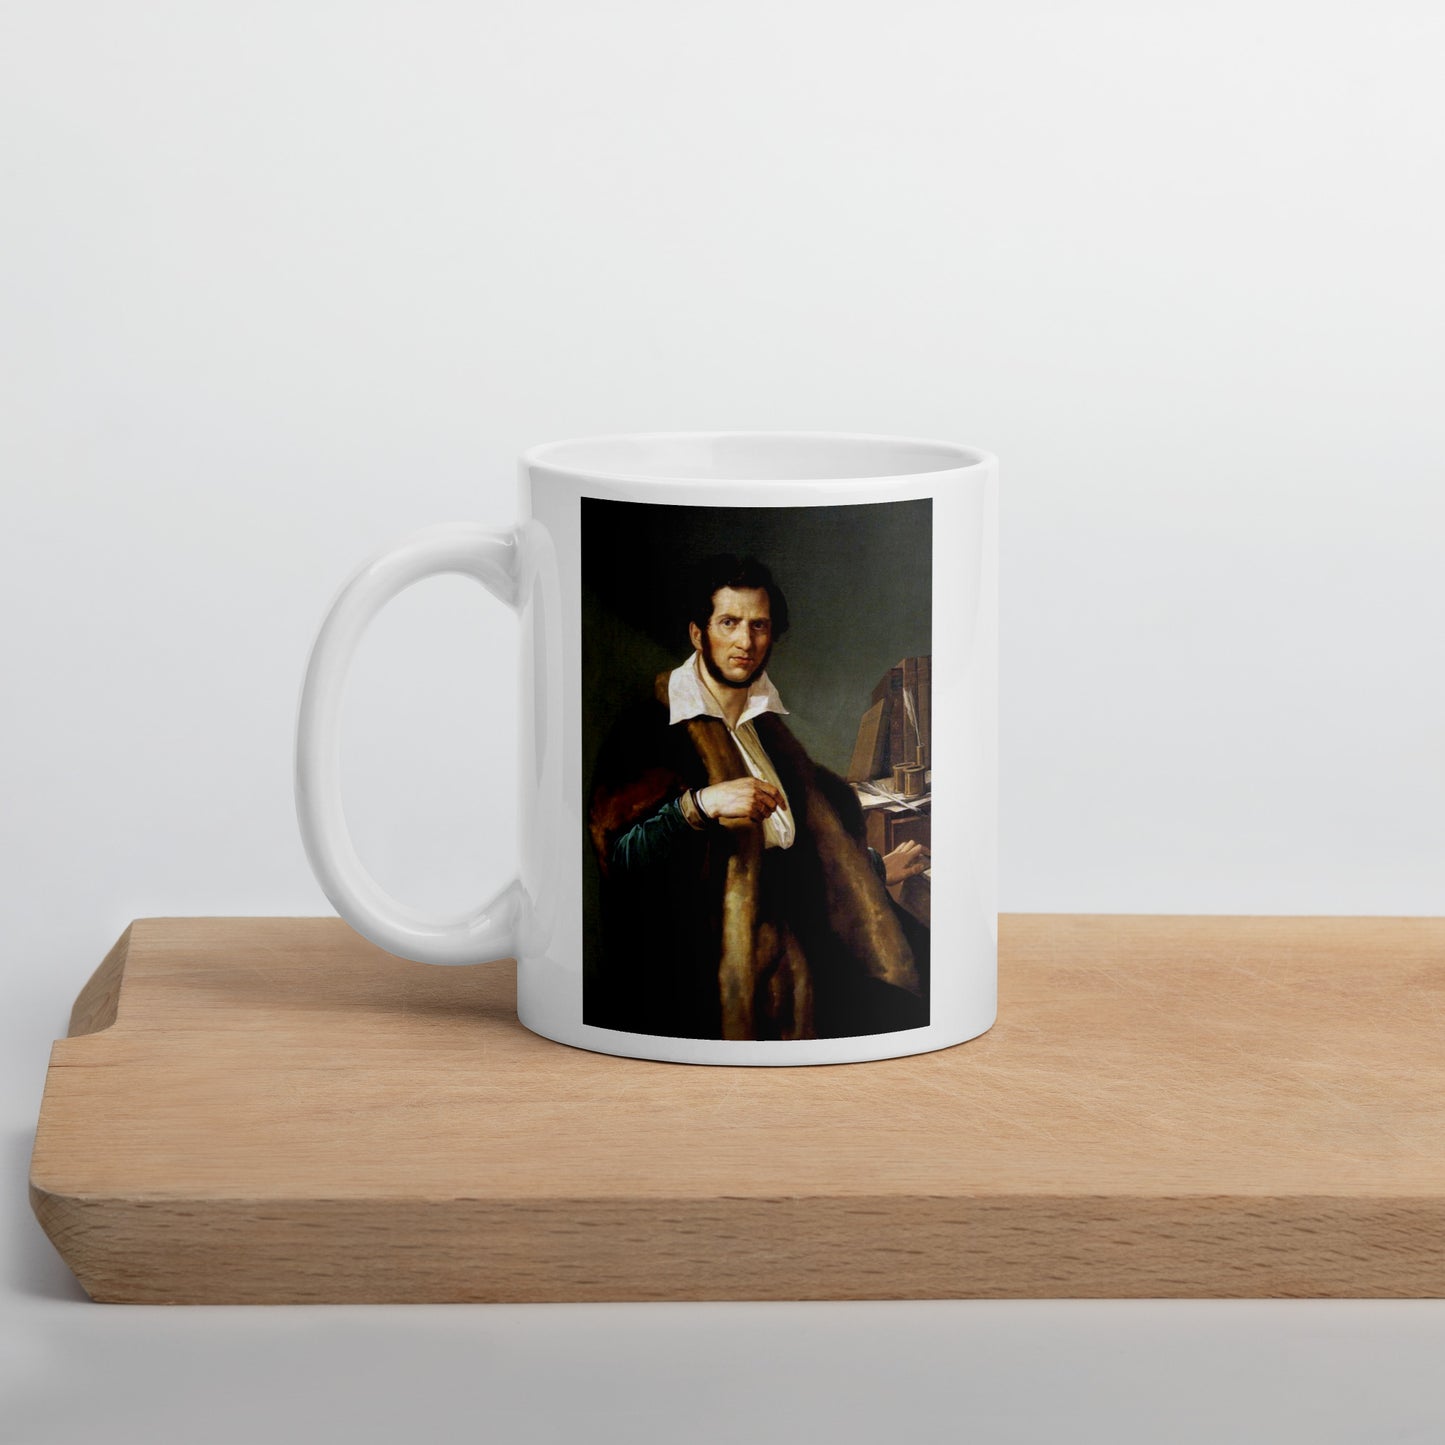 Gaetano Donizetti white glossy mug